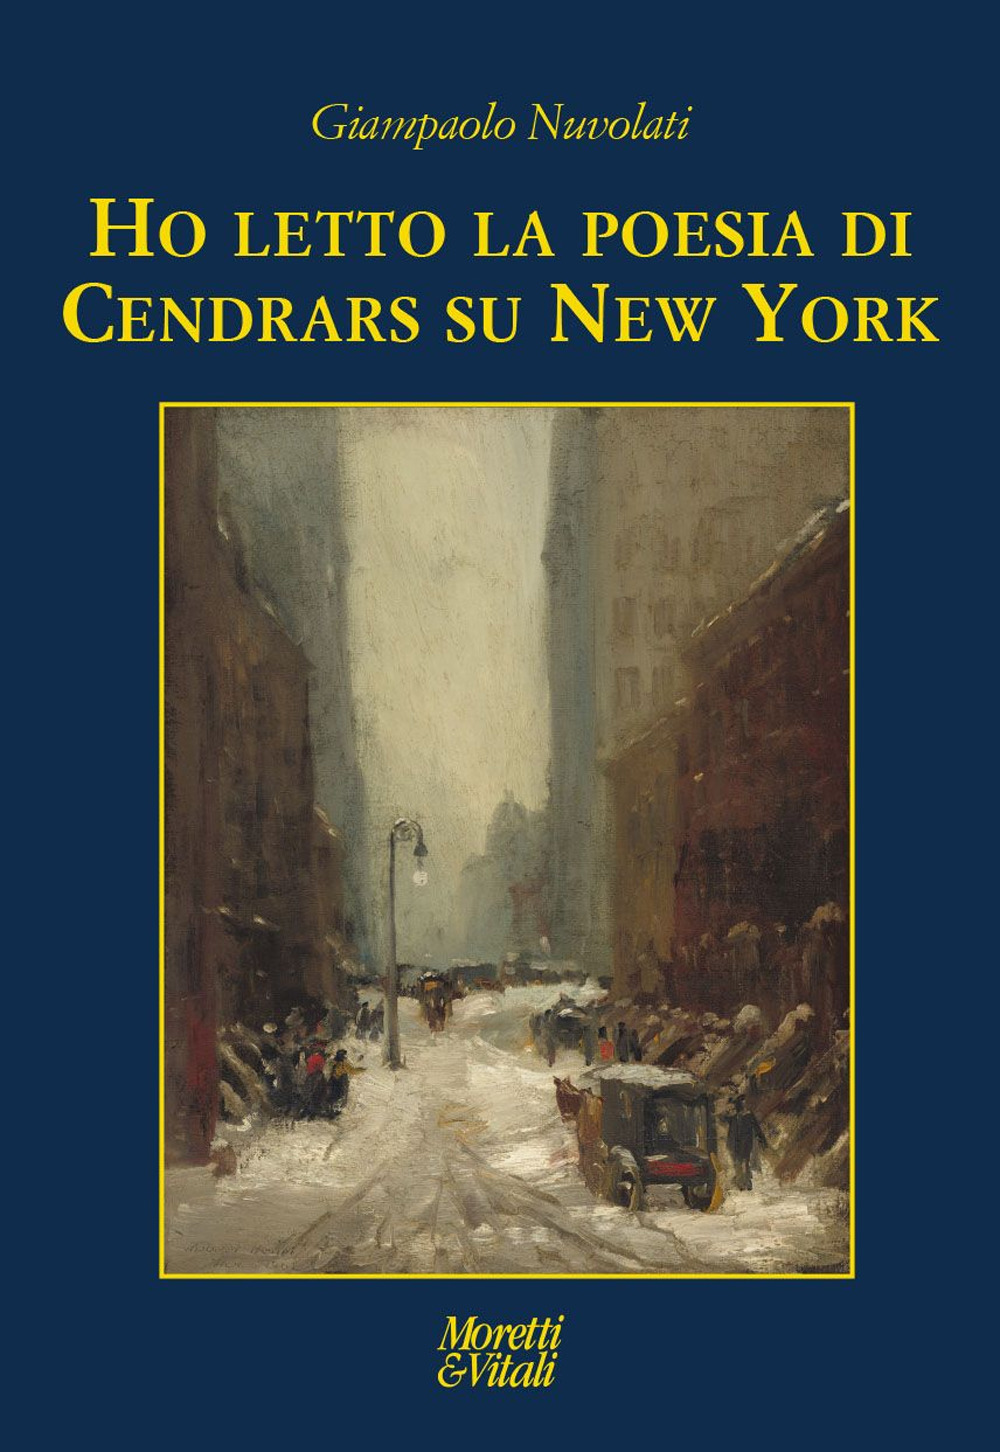 Ho letto la poesia di Cendrars su New York